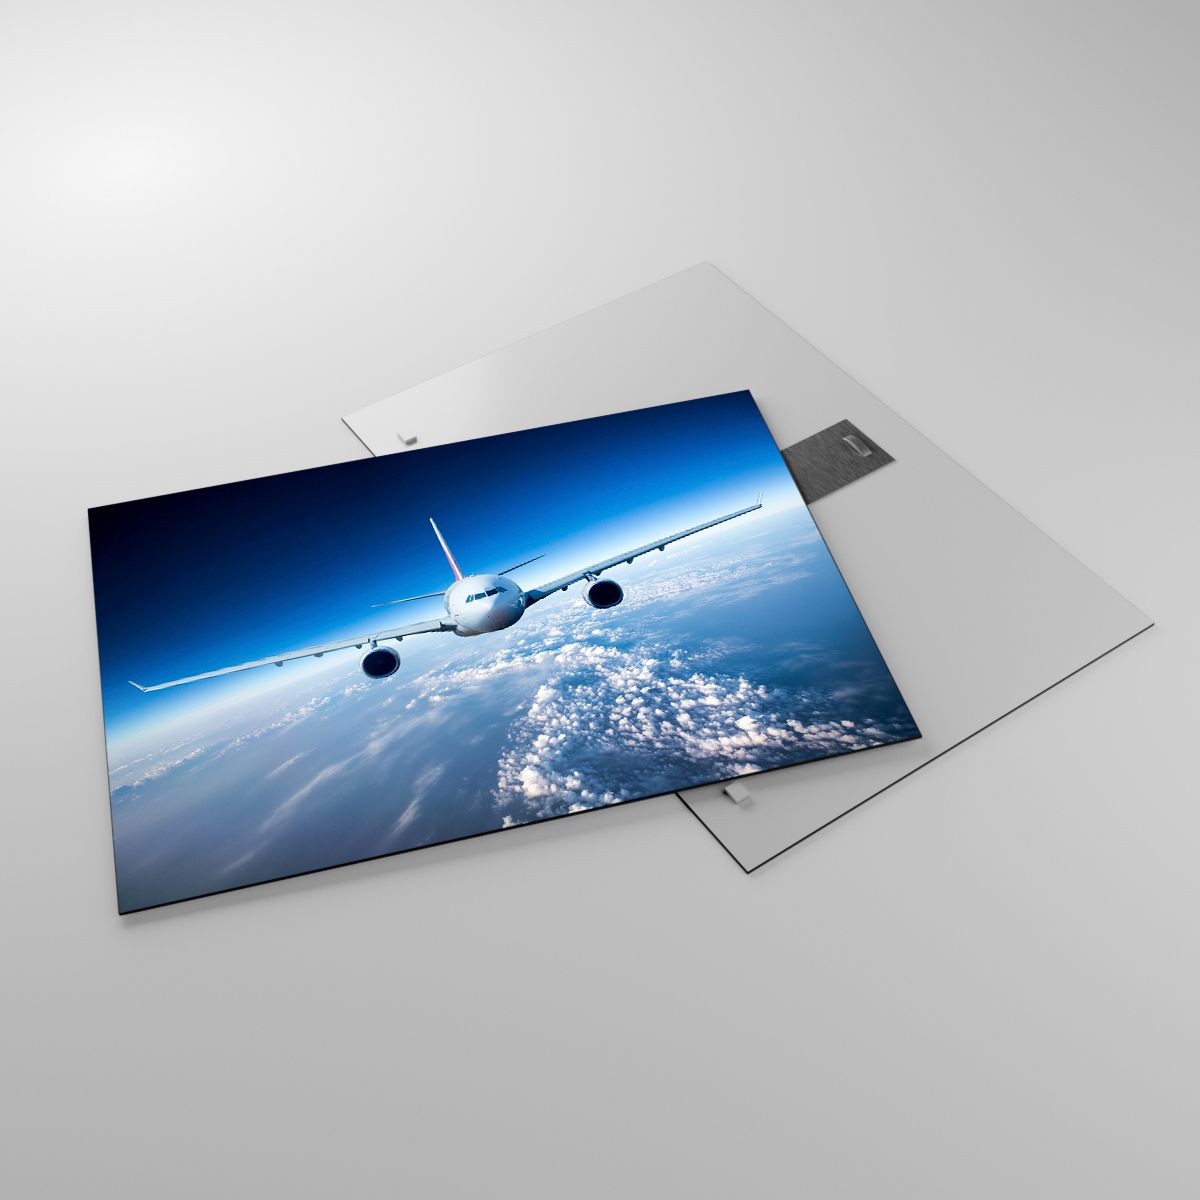 Glasbild Ebene, Glasbild Flugzeug, Glasbild Reise, Glasbild Himmel, Glasbild Wolken